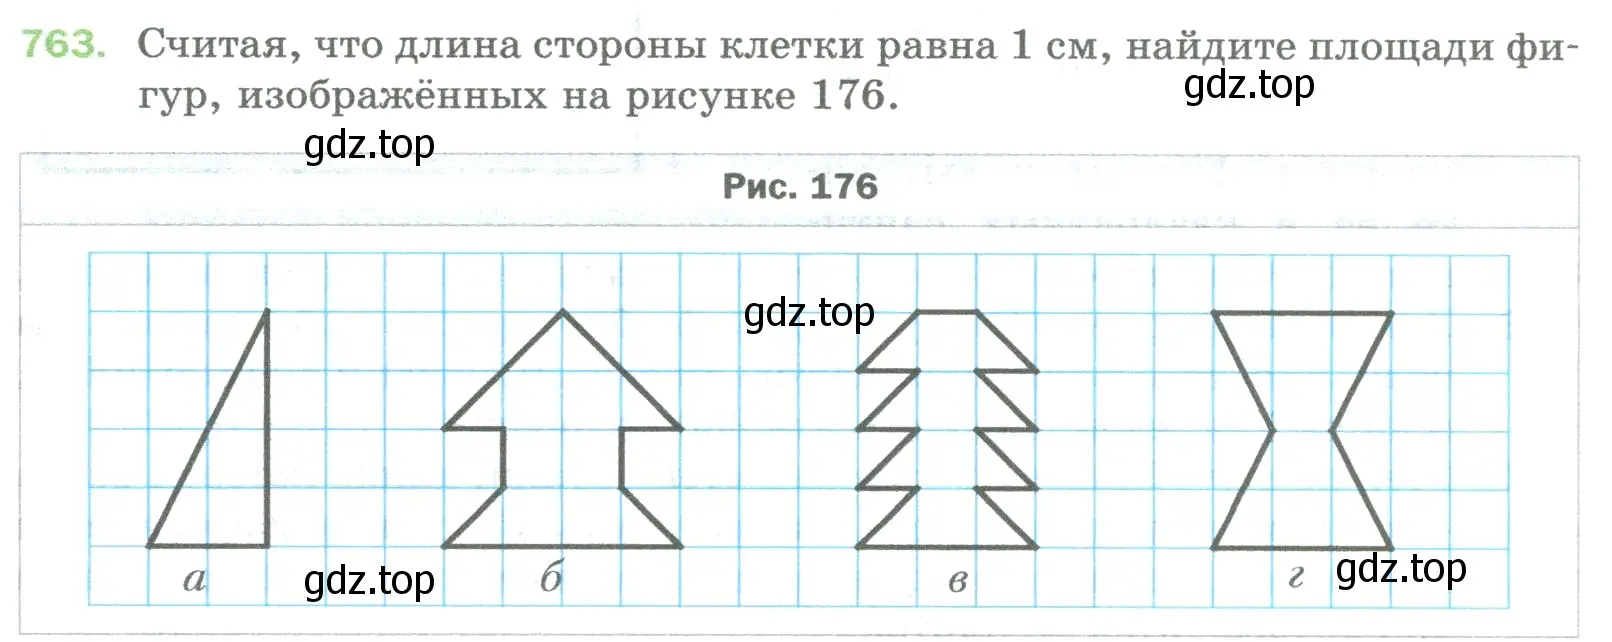 Условие номер 763 (страница 168) гдз по математике 5 класс Мерзляк, Полонский, учебник